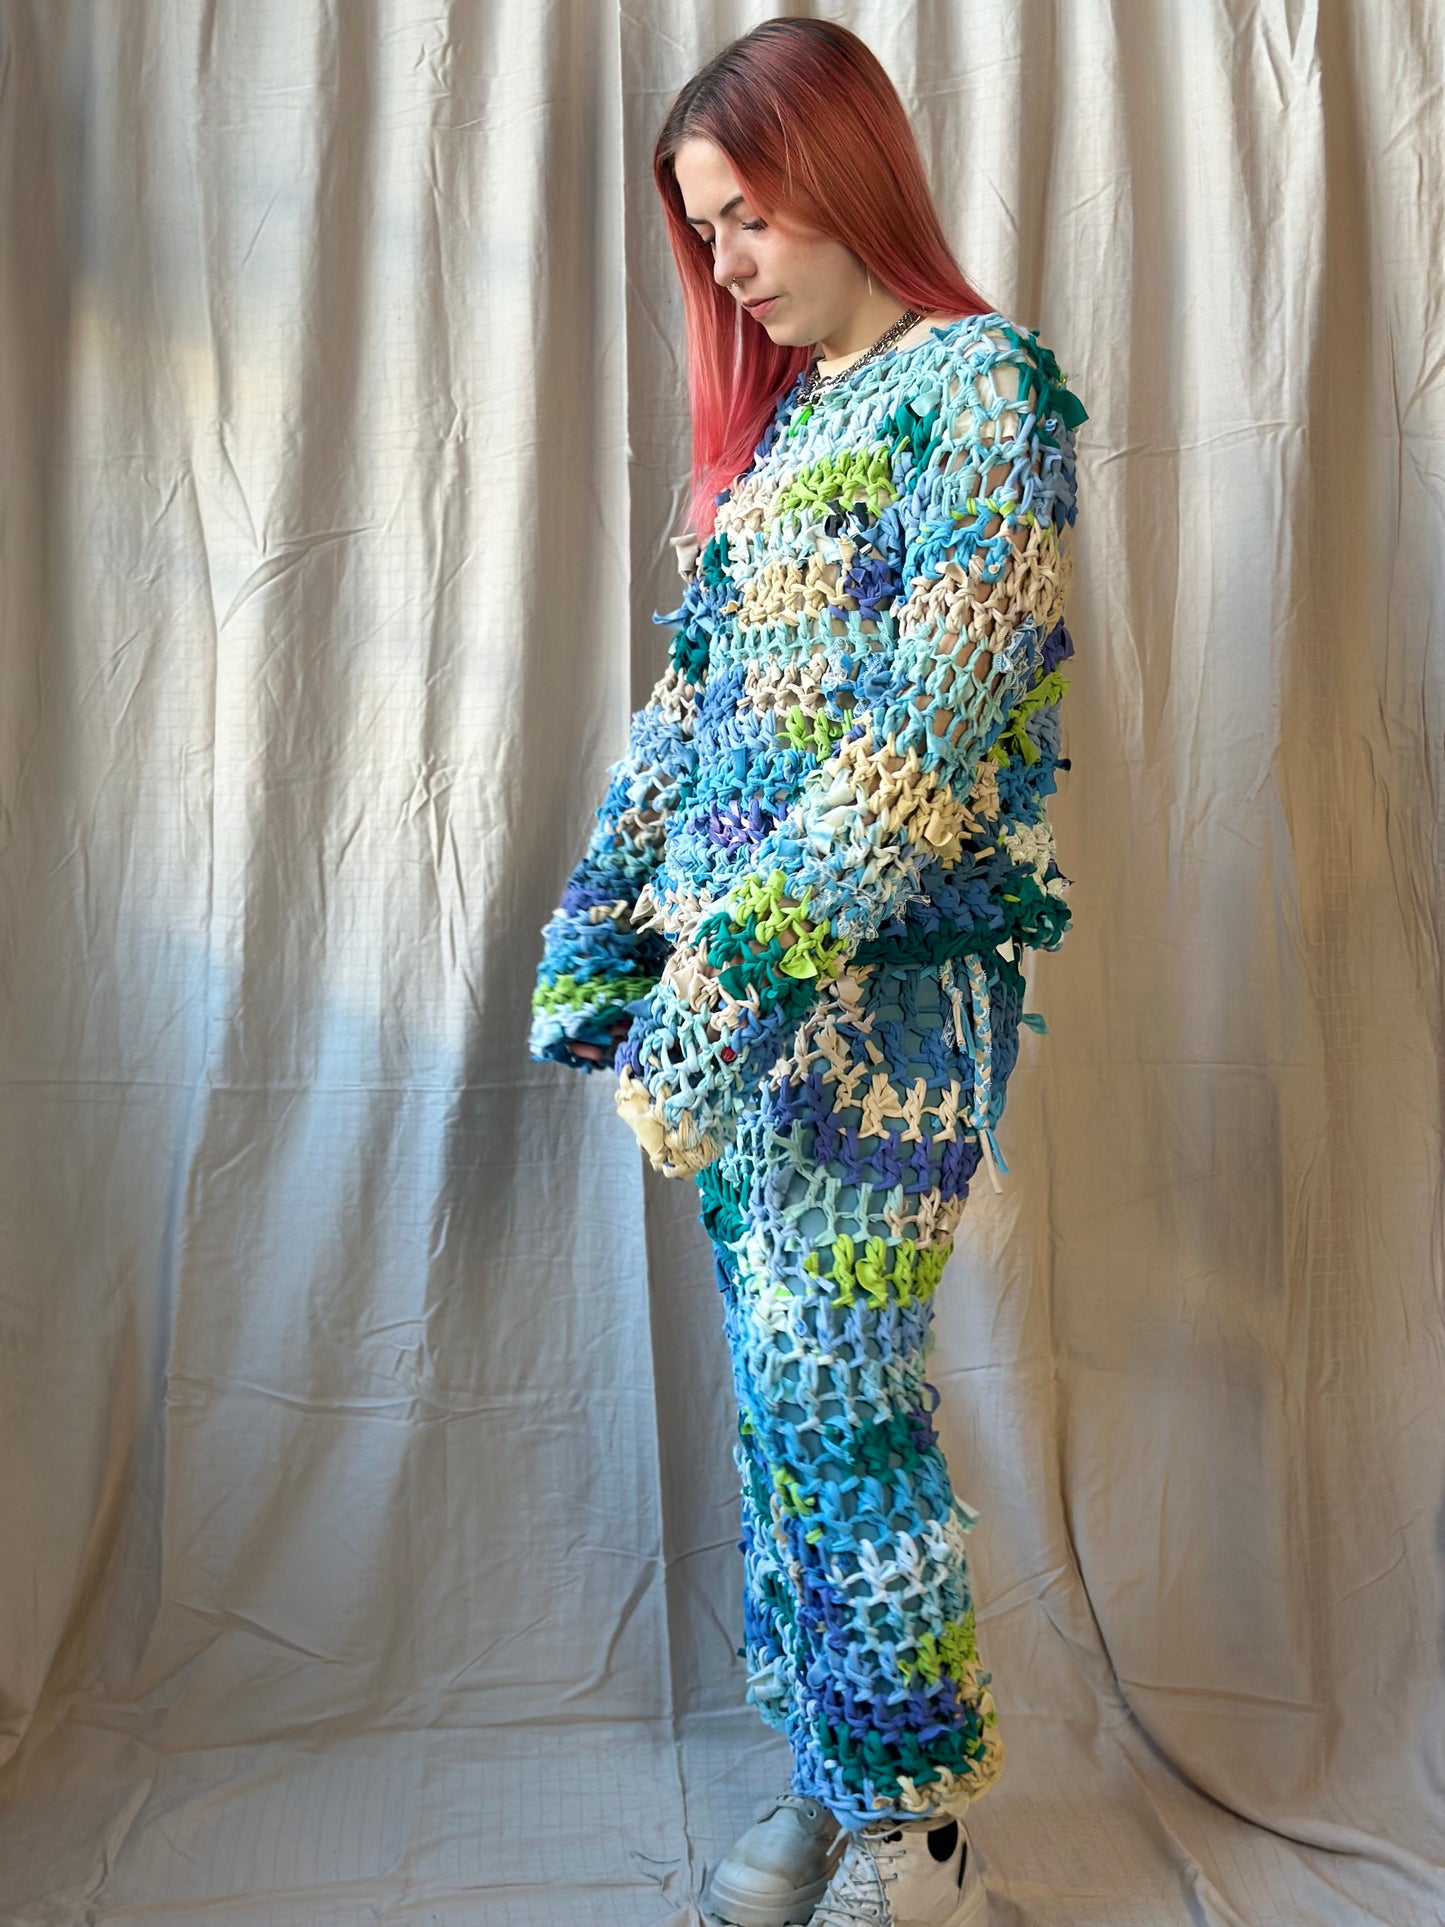 Whimsical Crochet Skirt